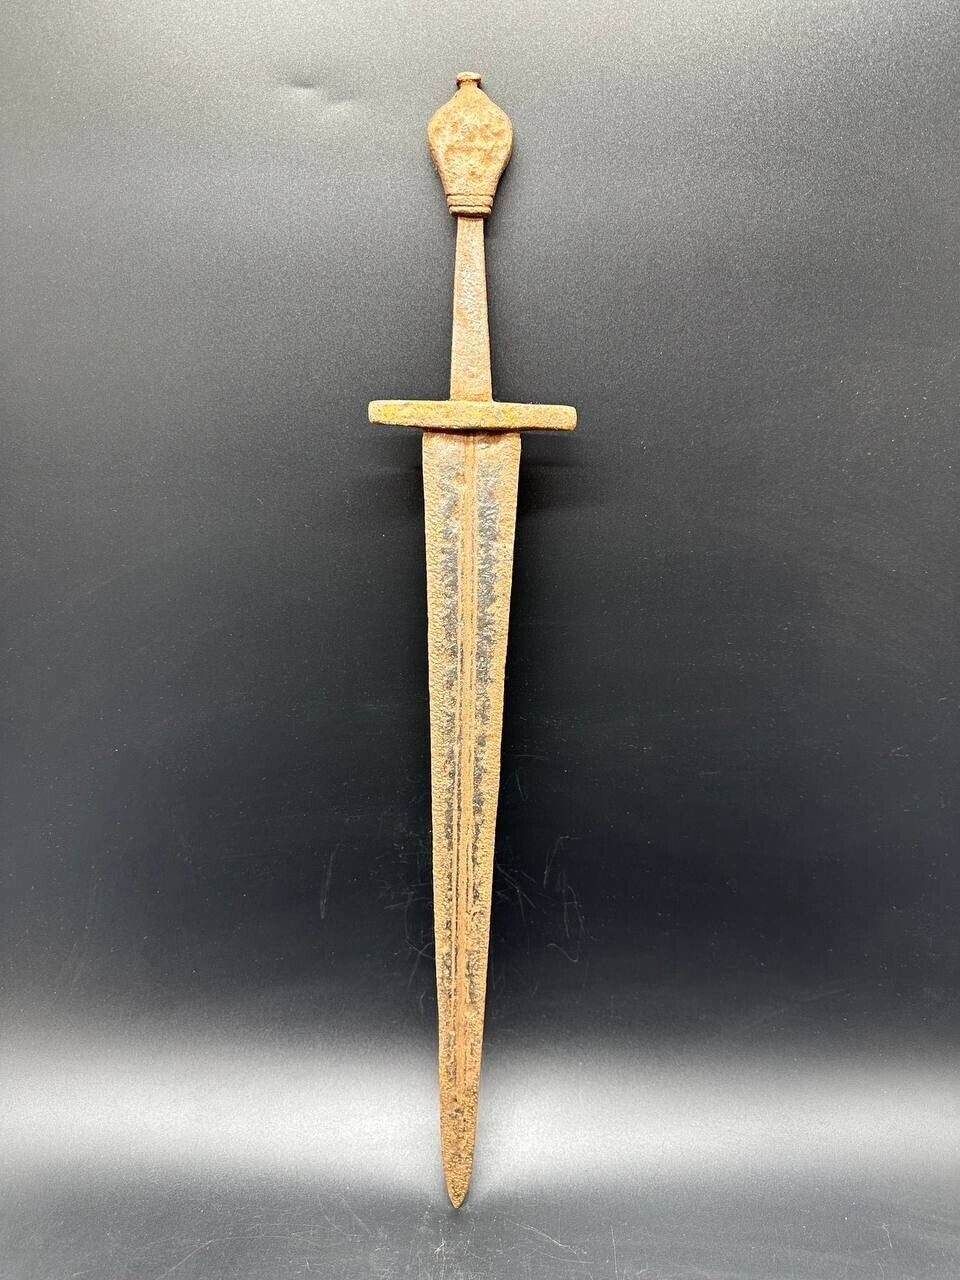 Medieval Sword circa 15th century AD.